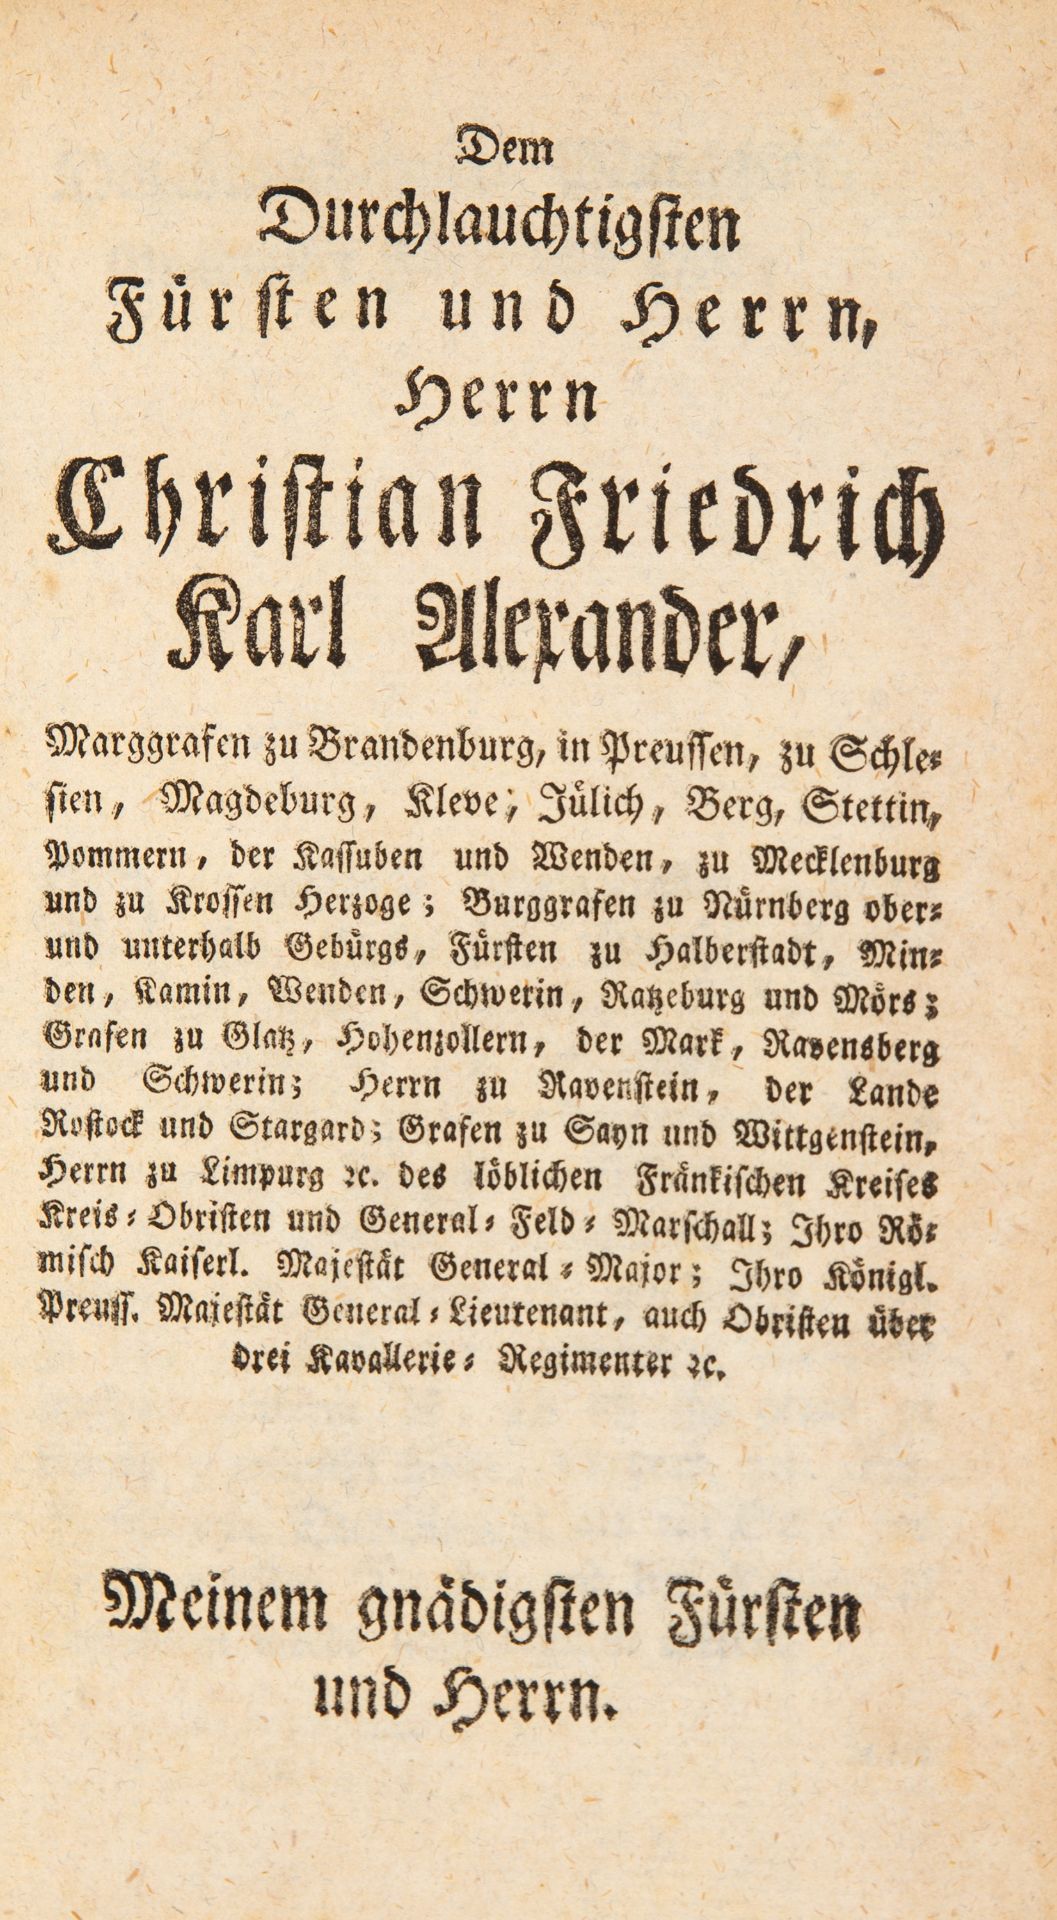 J. W. Rau, Untersuchung über die Typologie. Erlangen 1784.